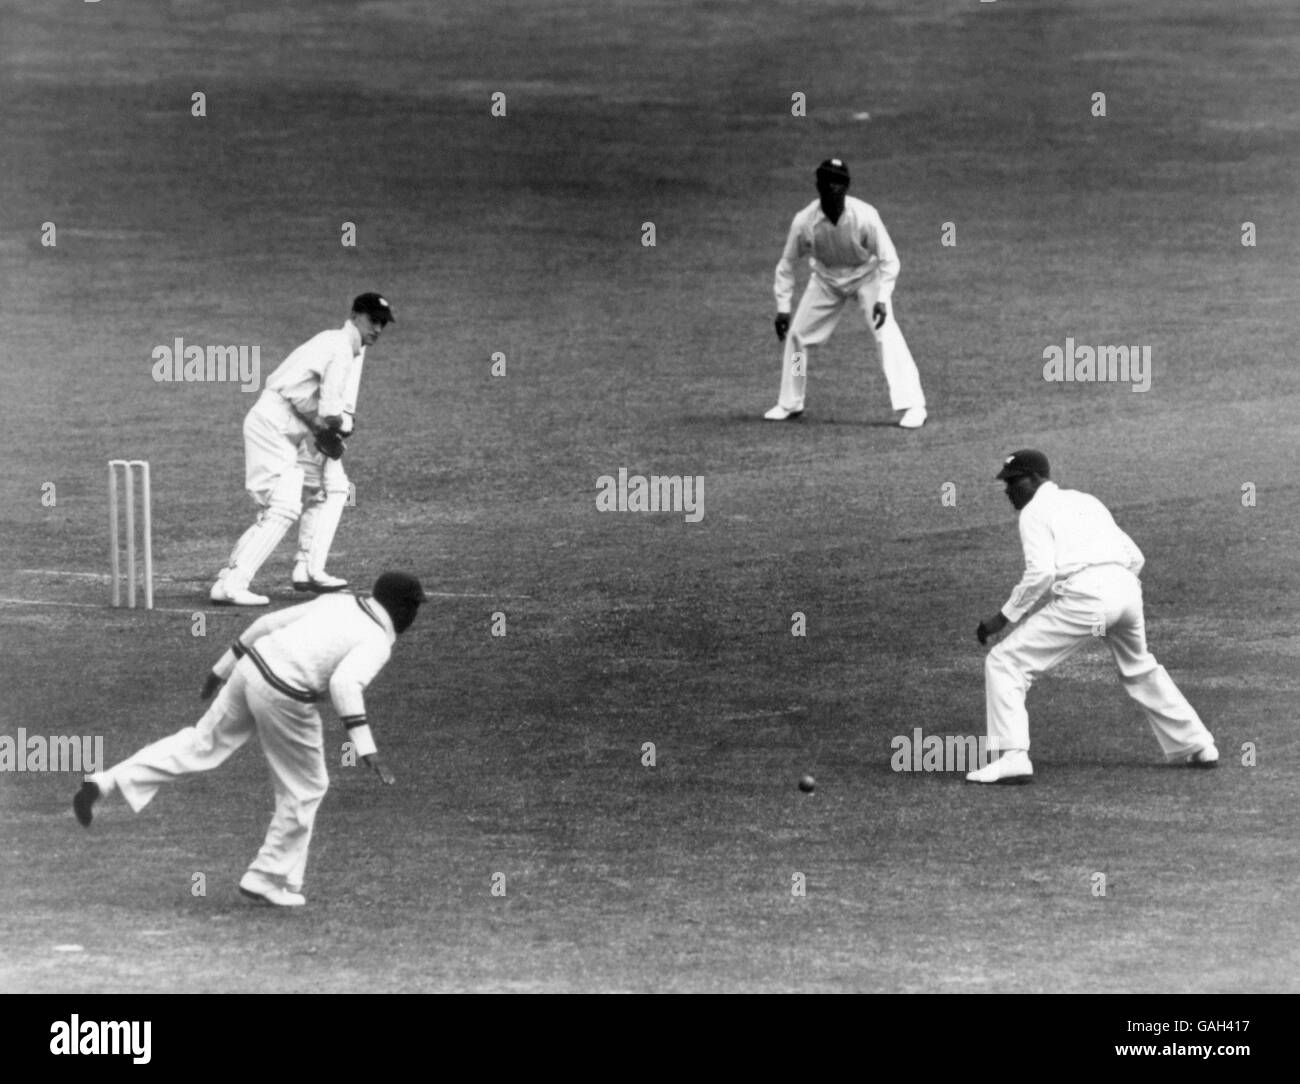 Cricket - Premier test - Angleterre / Antilles - deuxième jour.Le Len Hutton (l), en Angleterre, encadre la balle à travers les glissades Banque D'Images